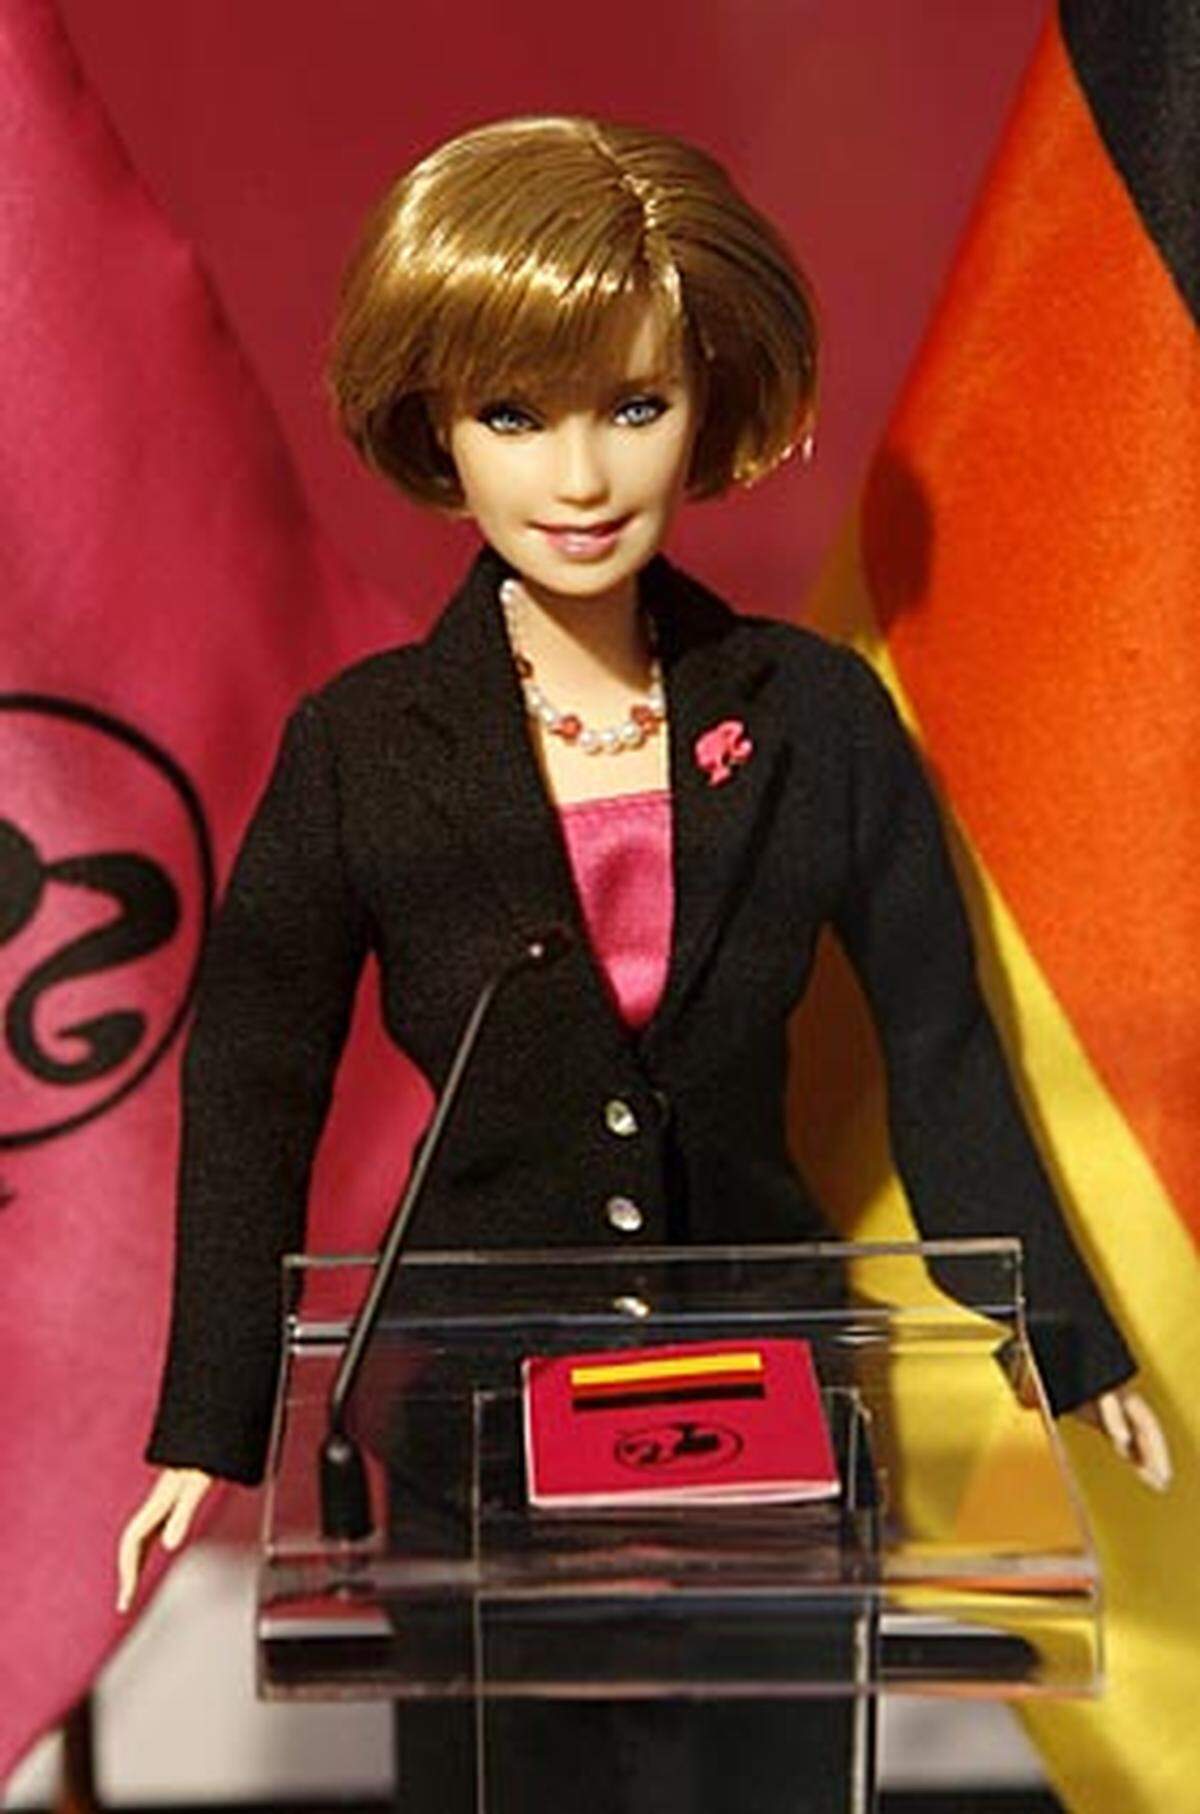 Erst kürzlich wurde auf der Spielwarenmesse in Leipzig eine Angela-Merkel-Barbie vorgestellt. Mit den mittelblonden, halblangen Haaren, dem Hosenanzug und der Perlenkette sieht die Puppe ihrem Vorbild ja auch zum Verwechseln ähnlich.